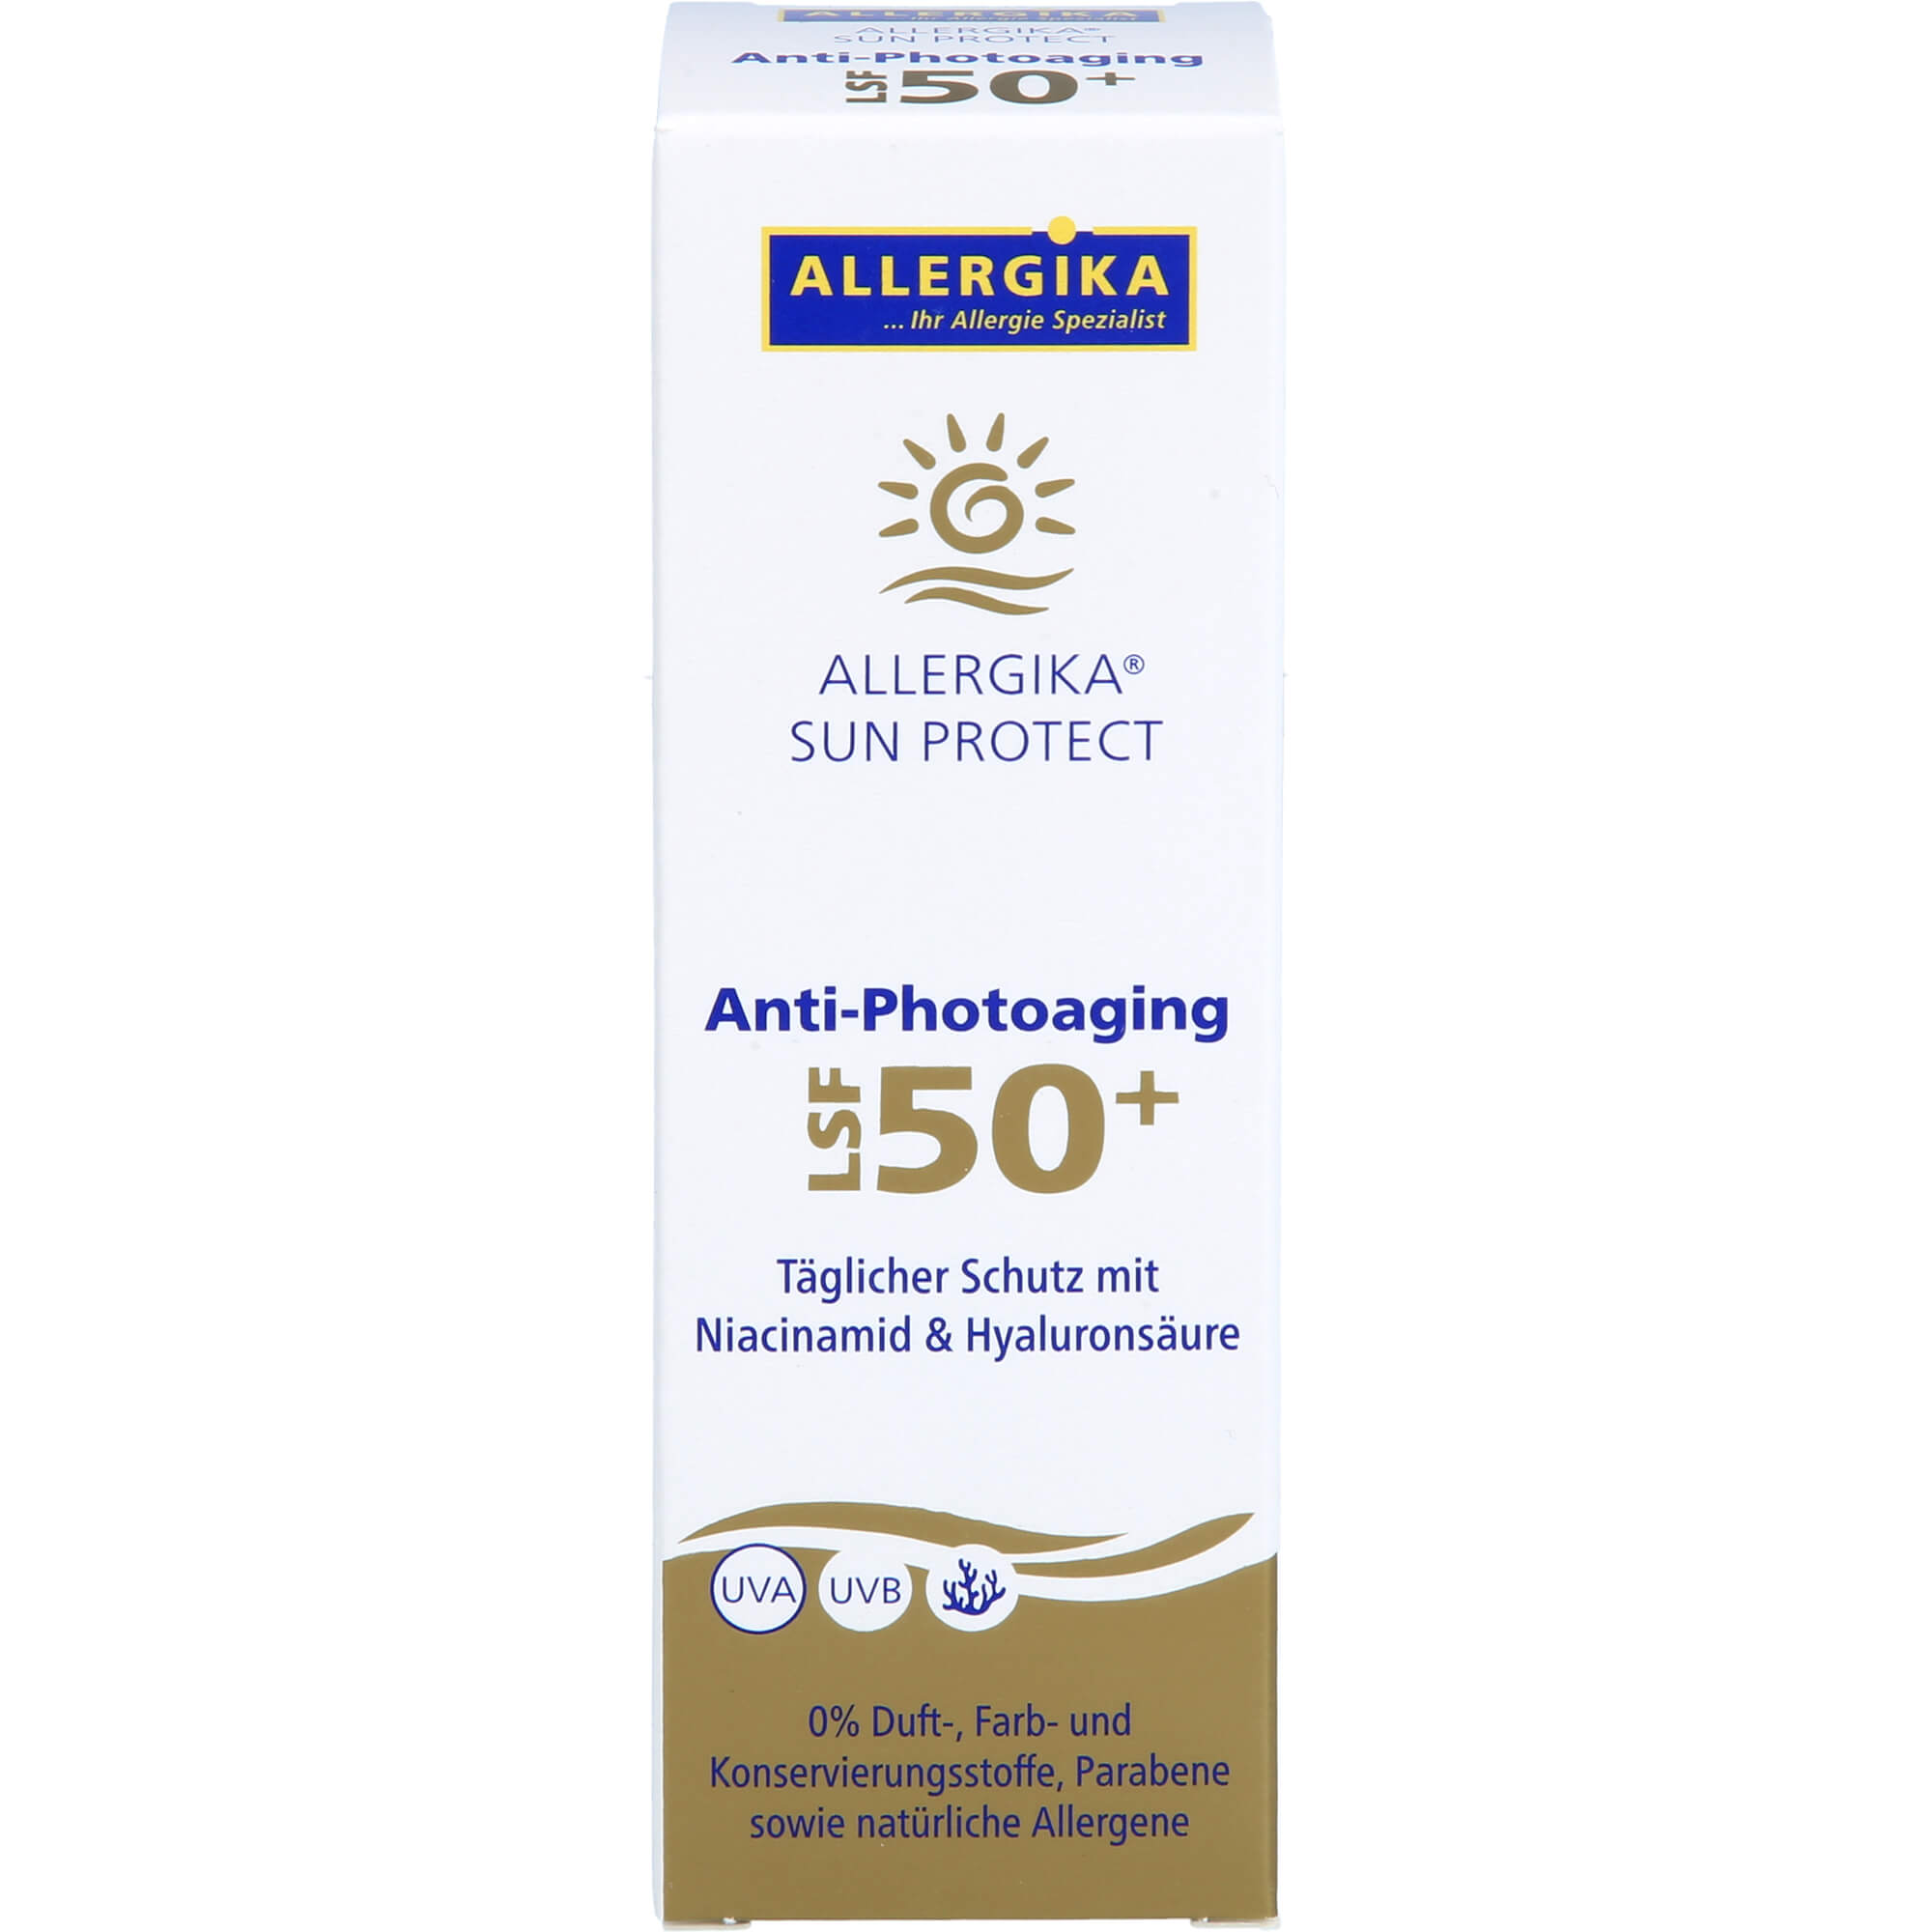 ALLERGIKA SUN PROTECT Anti-Photoaging Cr.LSF 50+